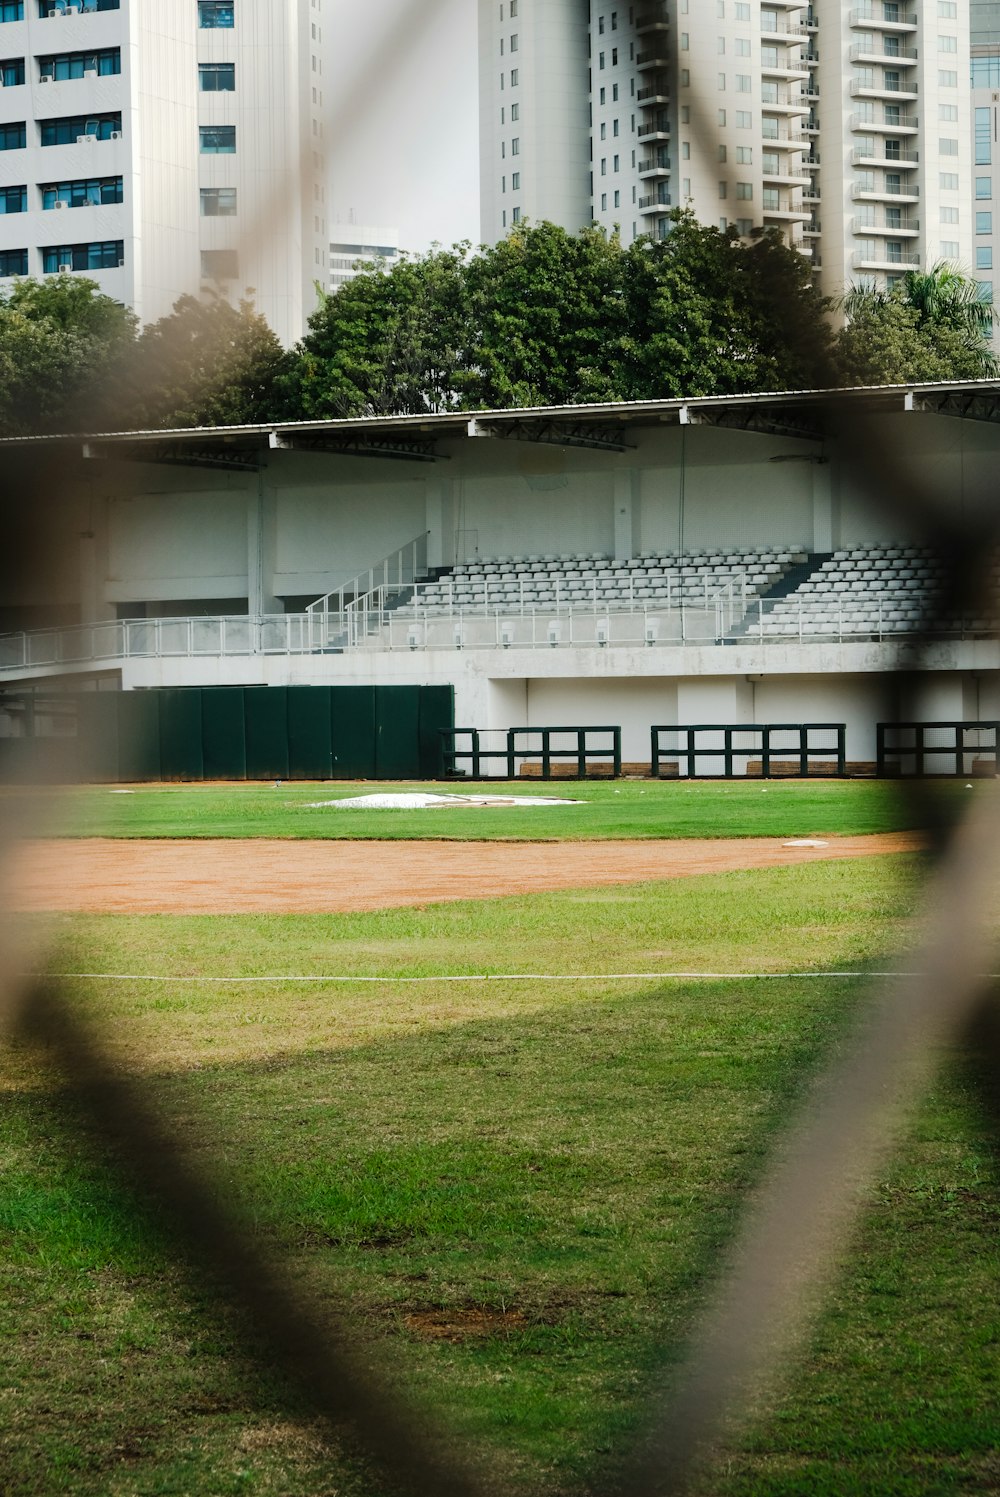 Un campo da baseball attraverso una recinzione con edifici sullo sfondo